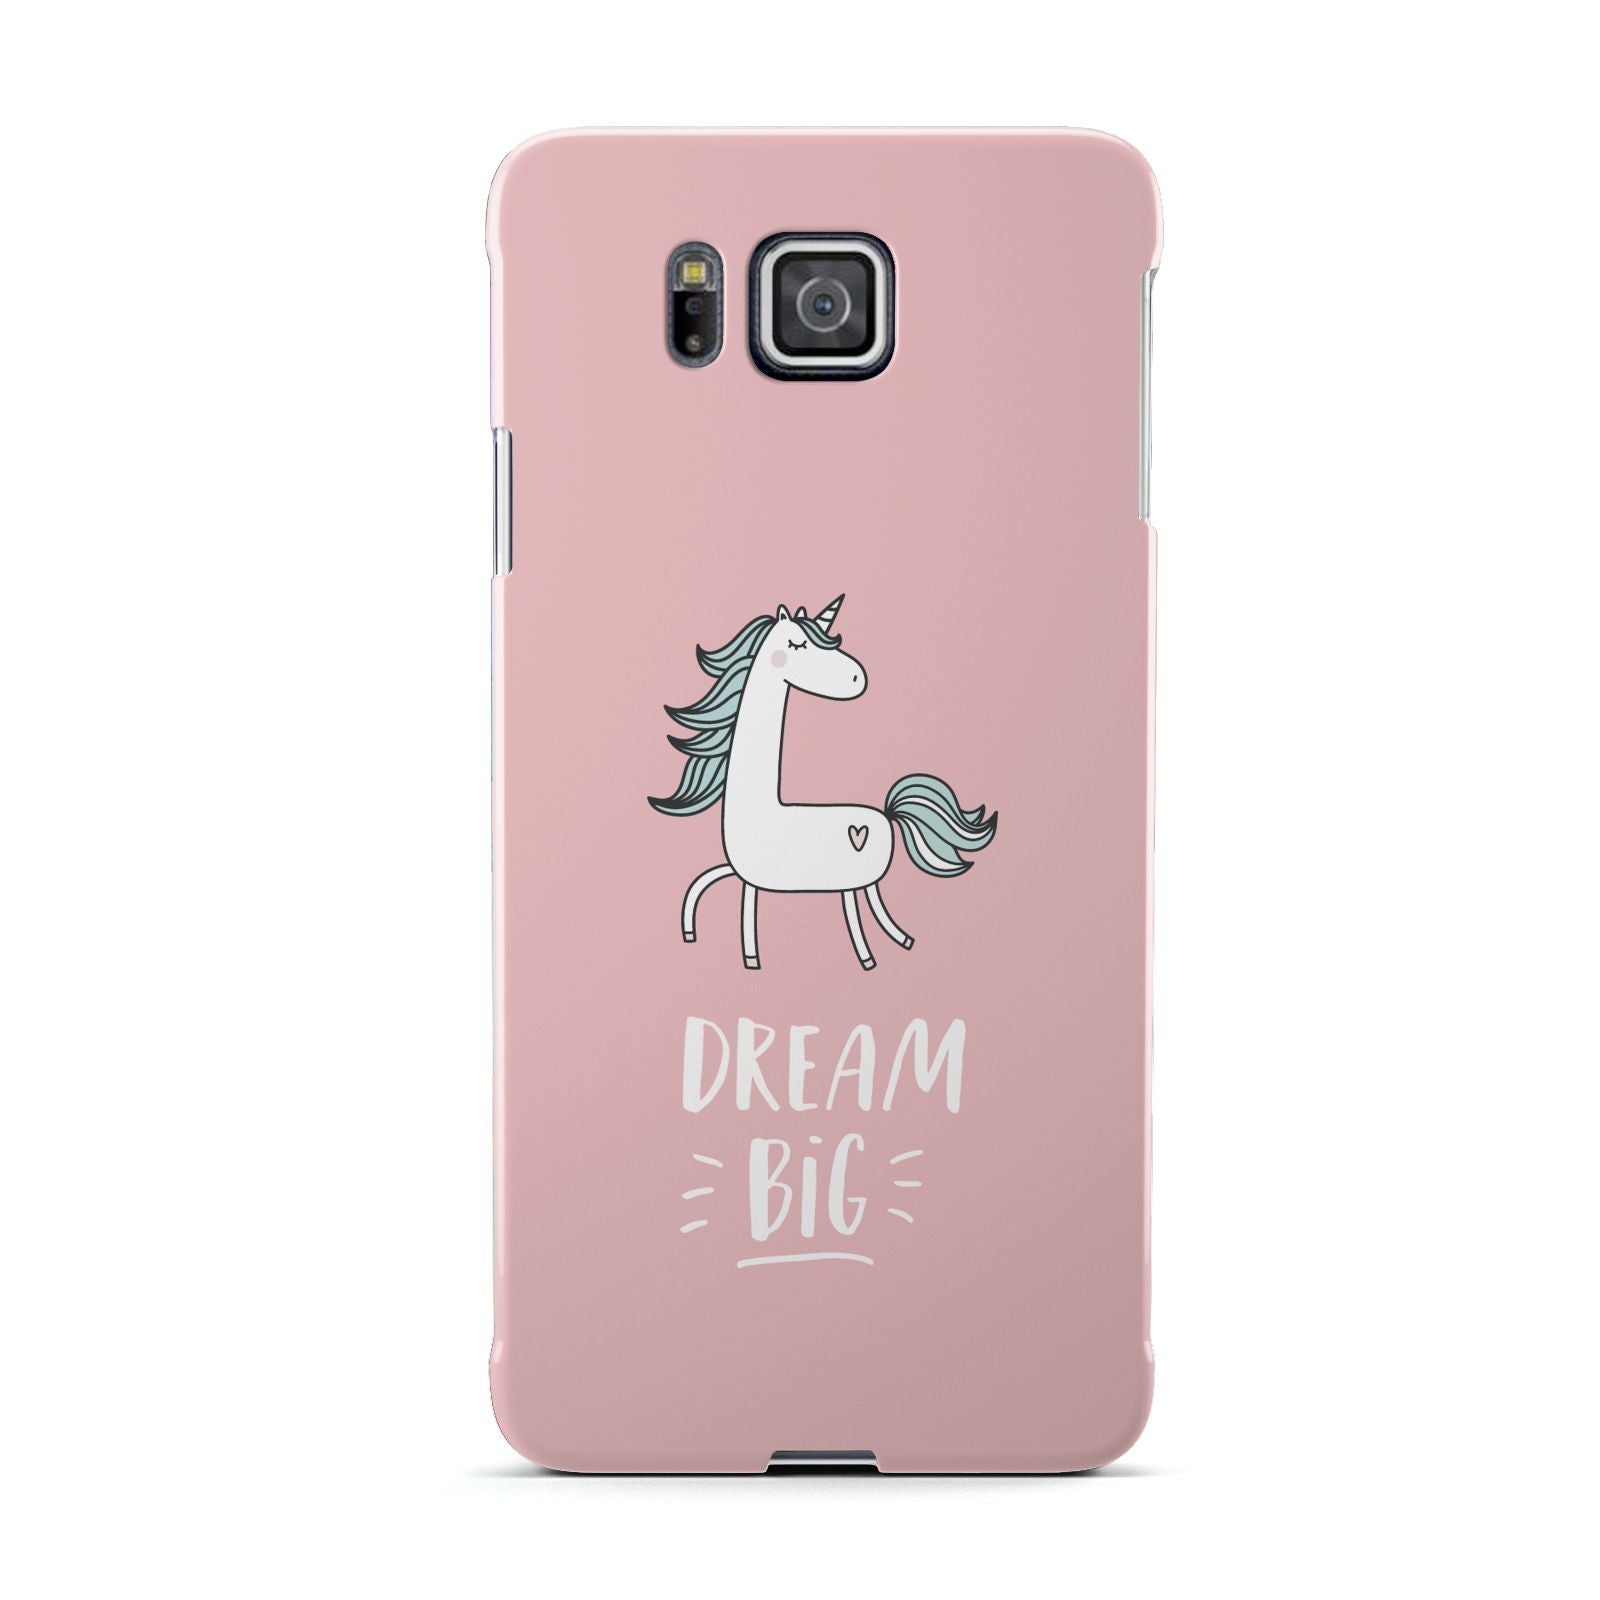 Unicorn Print Dream Big Samsung Galaxy Alpha Case